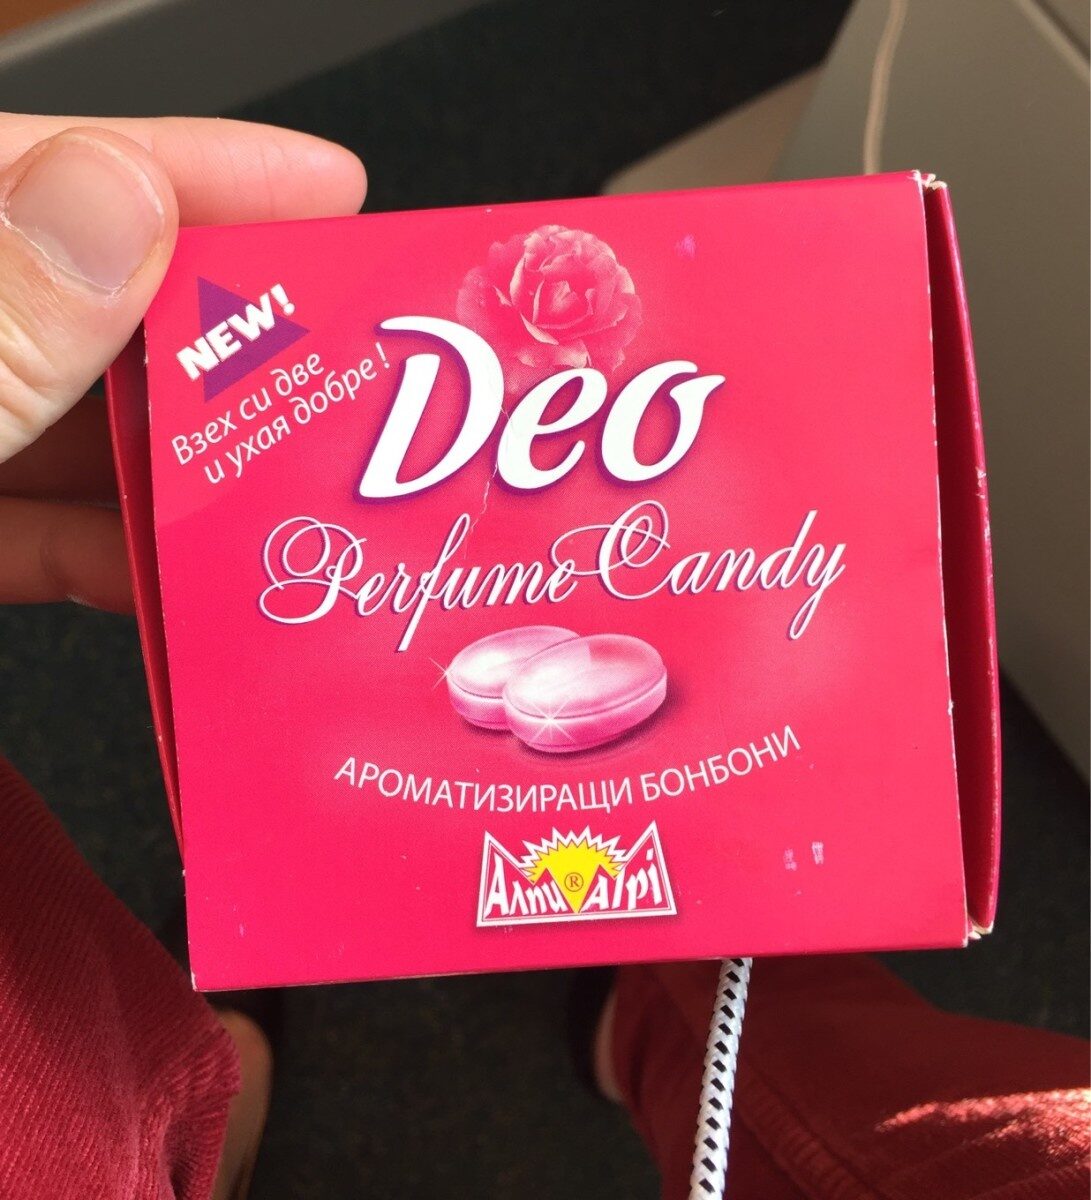 Deo perfume candy - Produktas - fr